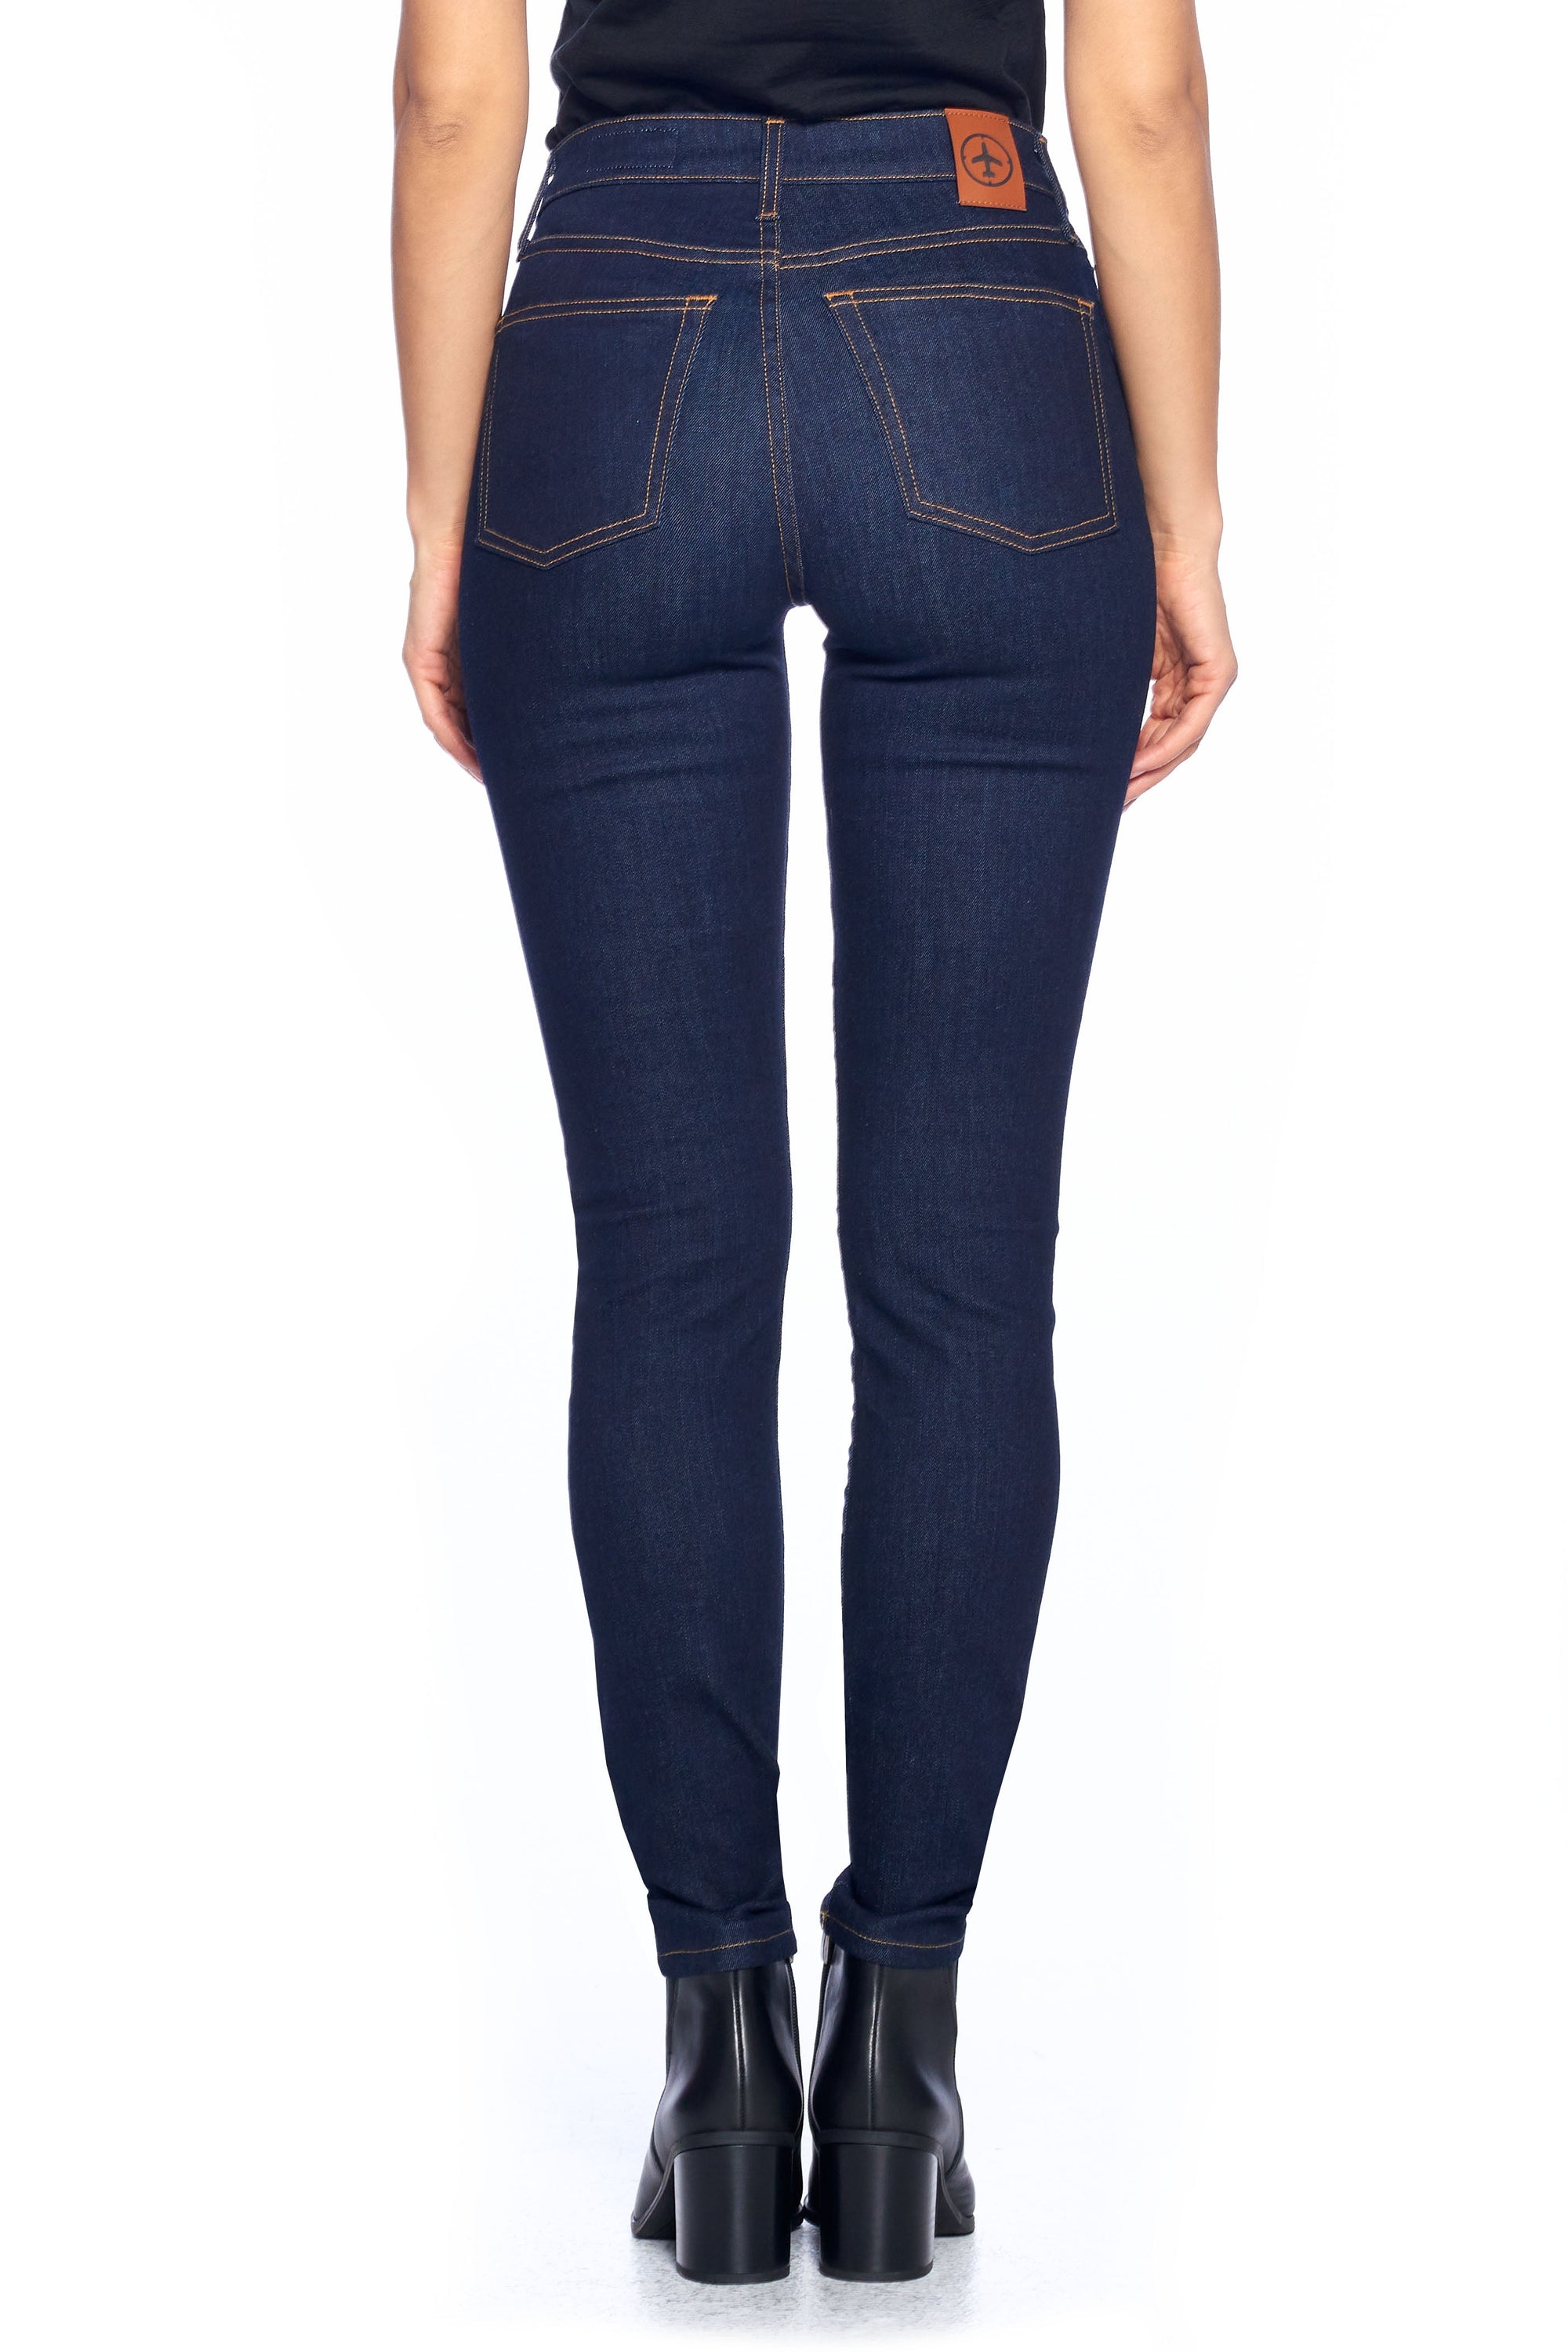 mærke hjælp guld Women's Comfort Skinny Fit Jeans | Dark Indigo | Made in the USA - Aviator